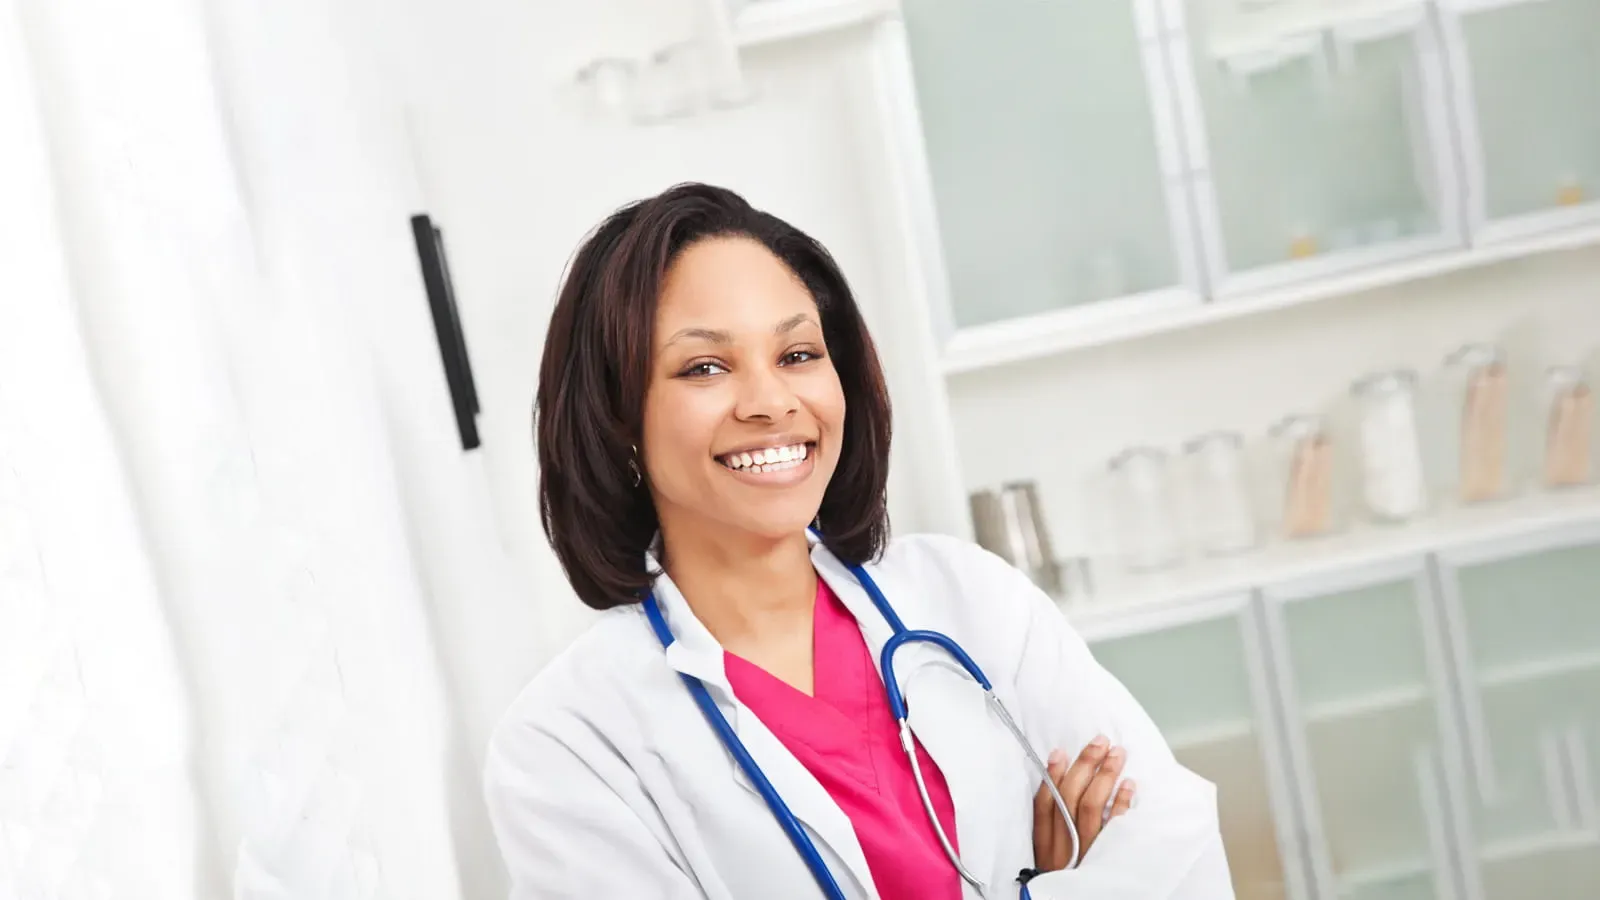 Female doctor wearing pink scrubs smiling